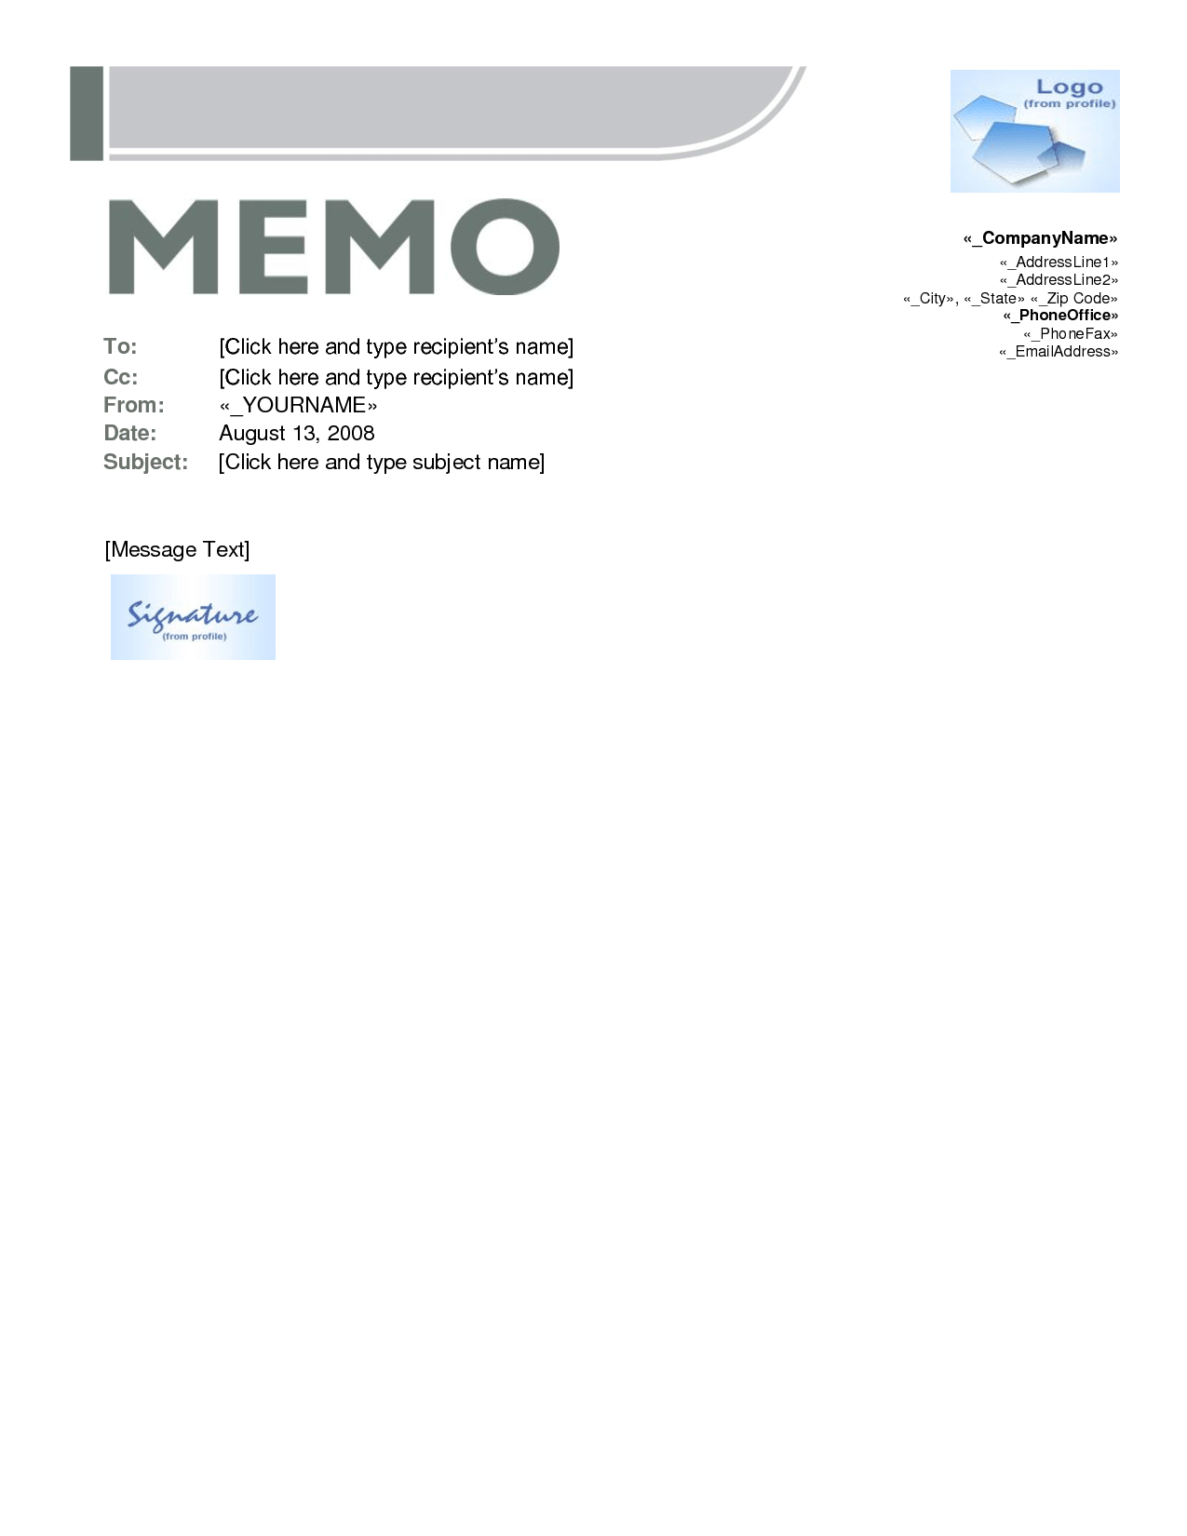 microsoft word memo template 2010